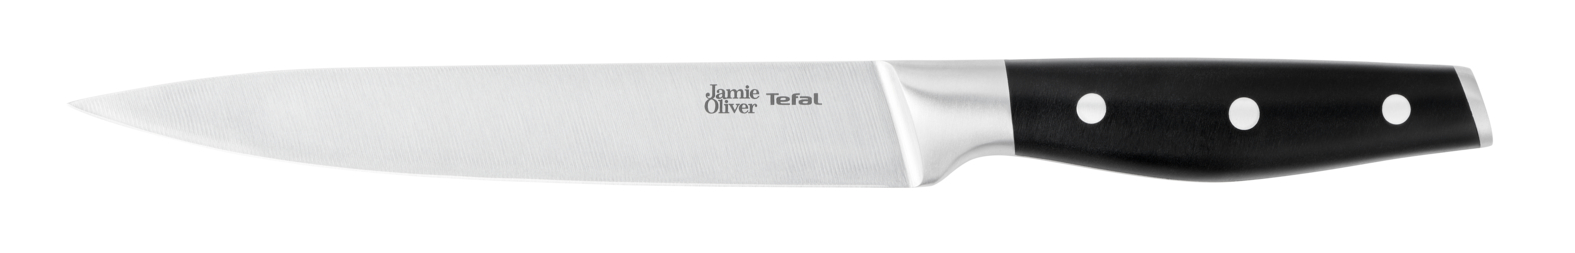 Jamie Oliver 20 cм K2670244 кастрюля 4 9л с крышкой tefal jamie oliver e3114674